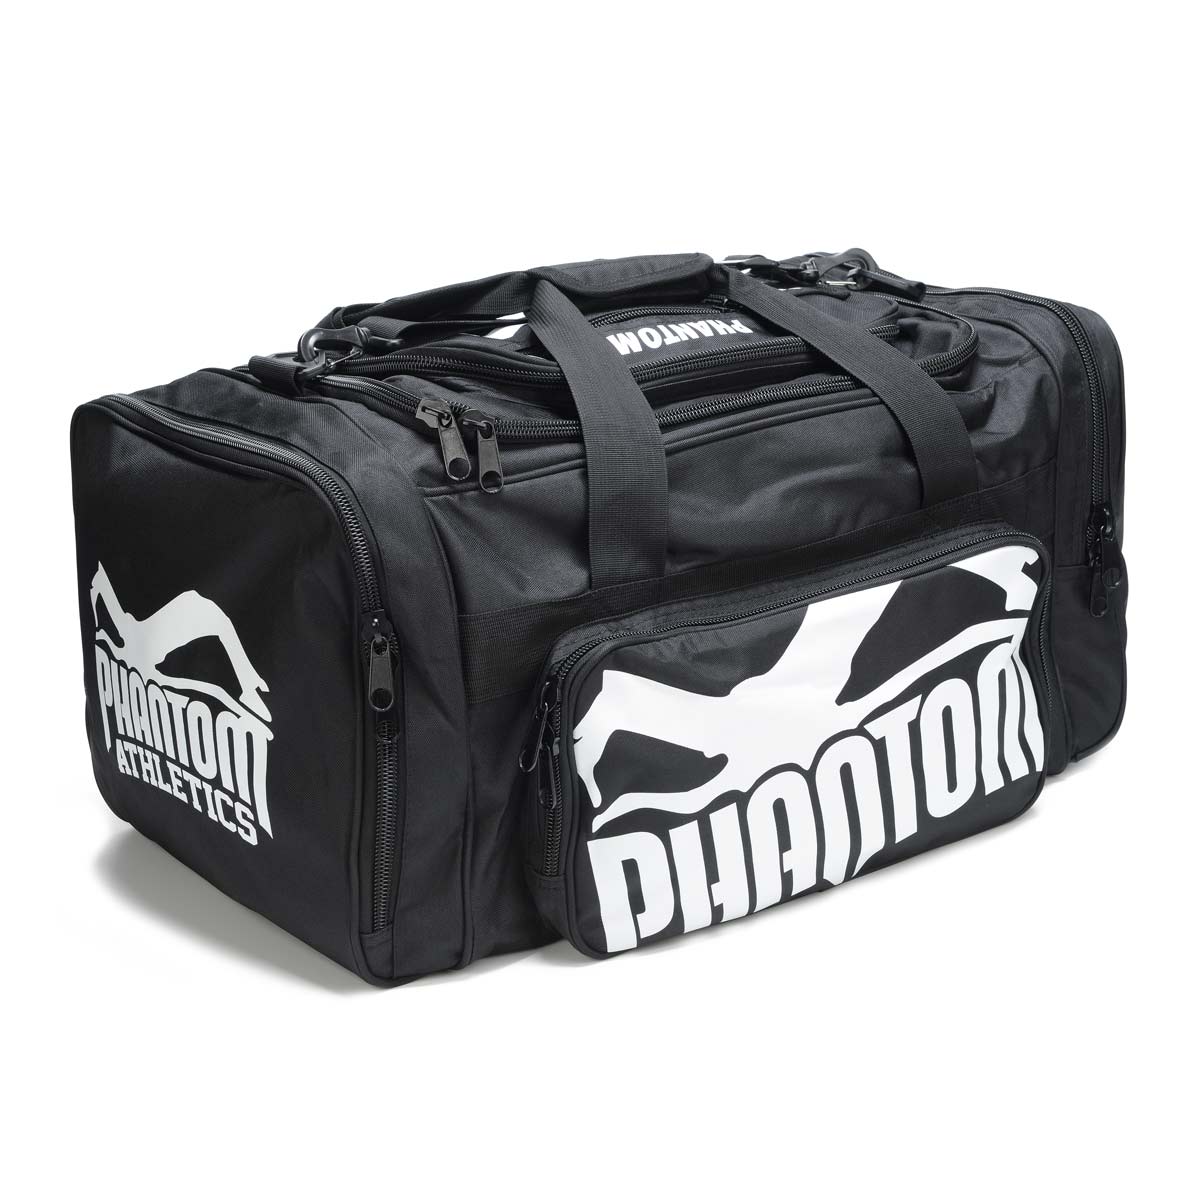 Phantom тренажна торба Теам са доста простора за одлагање ваше опреме за борилачке вештине